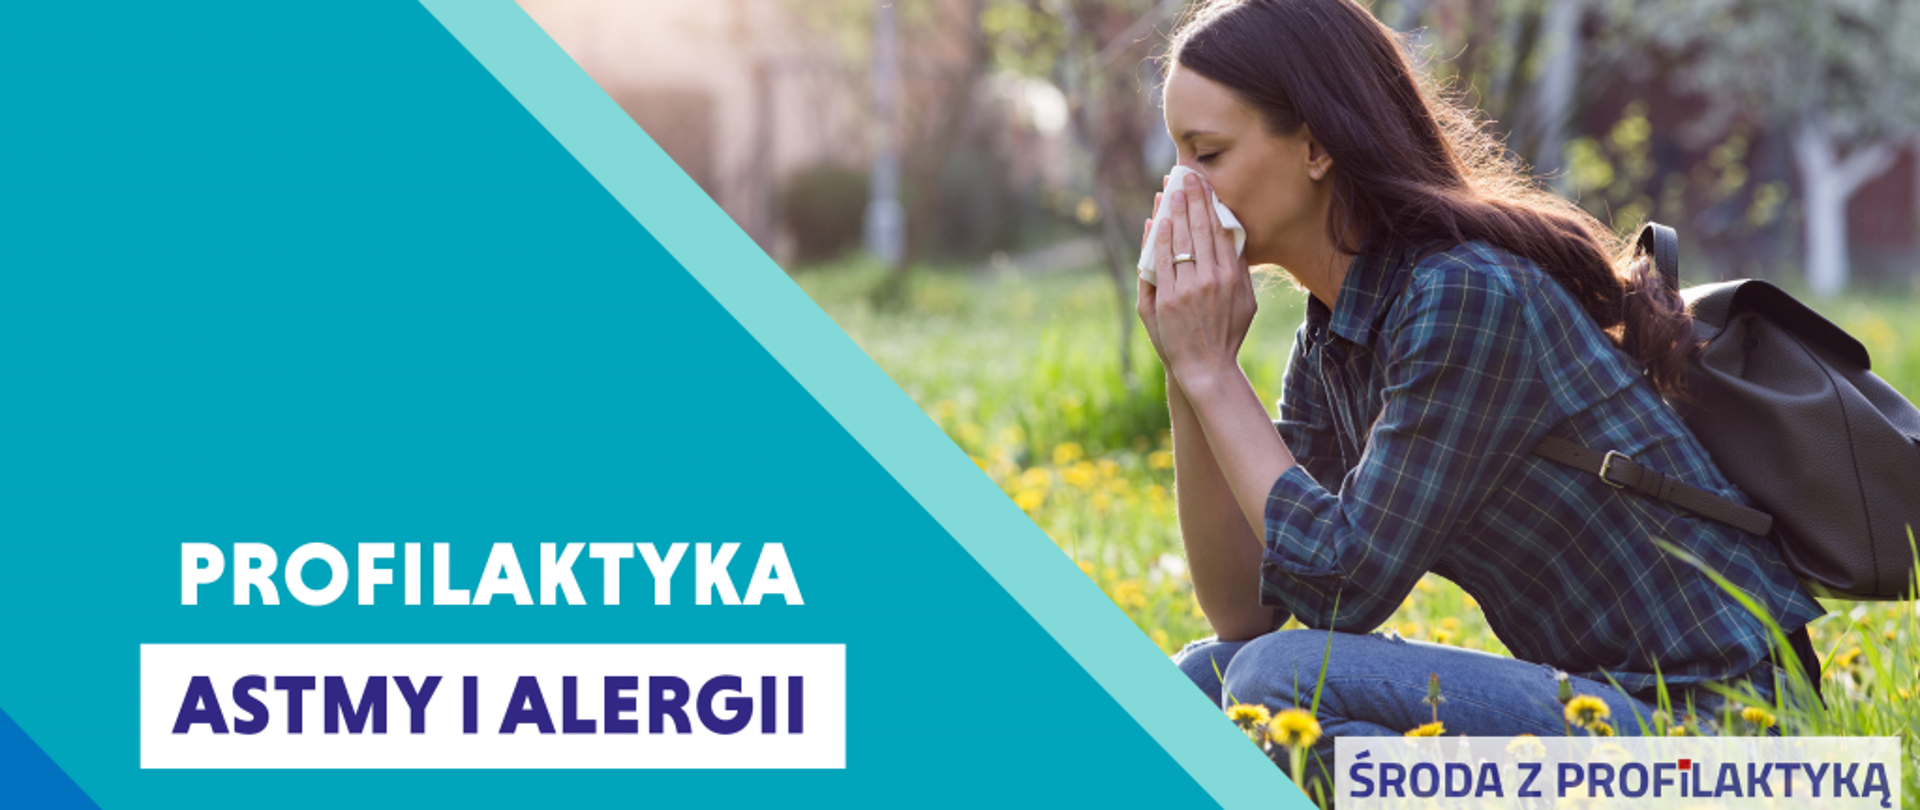 Środa z profilaktyką - Profilaktyka Astmy i Alergii